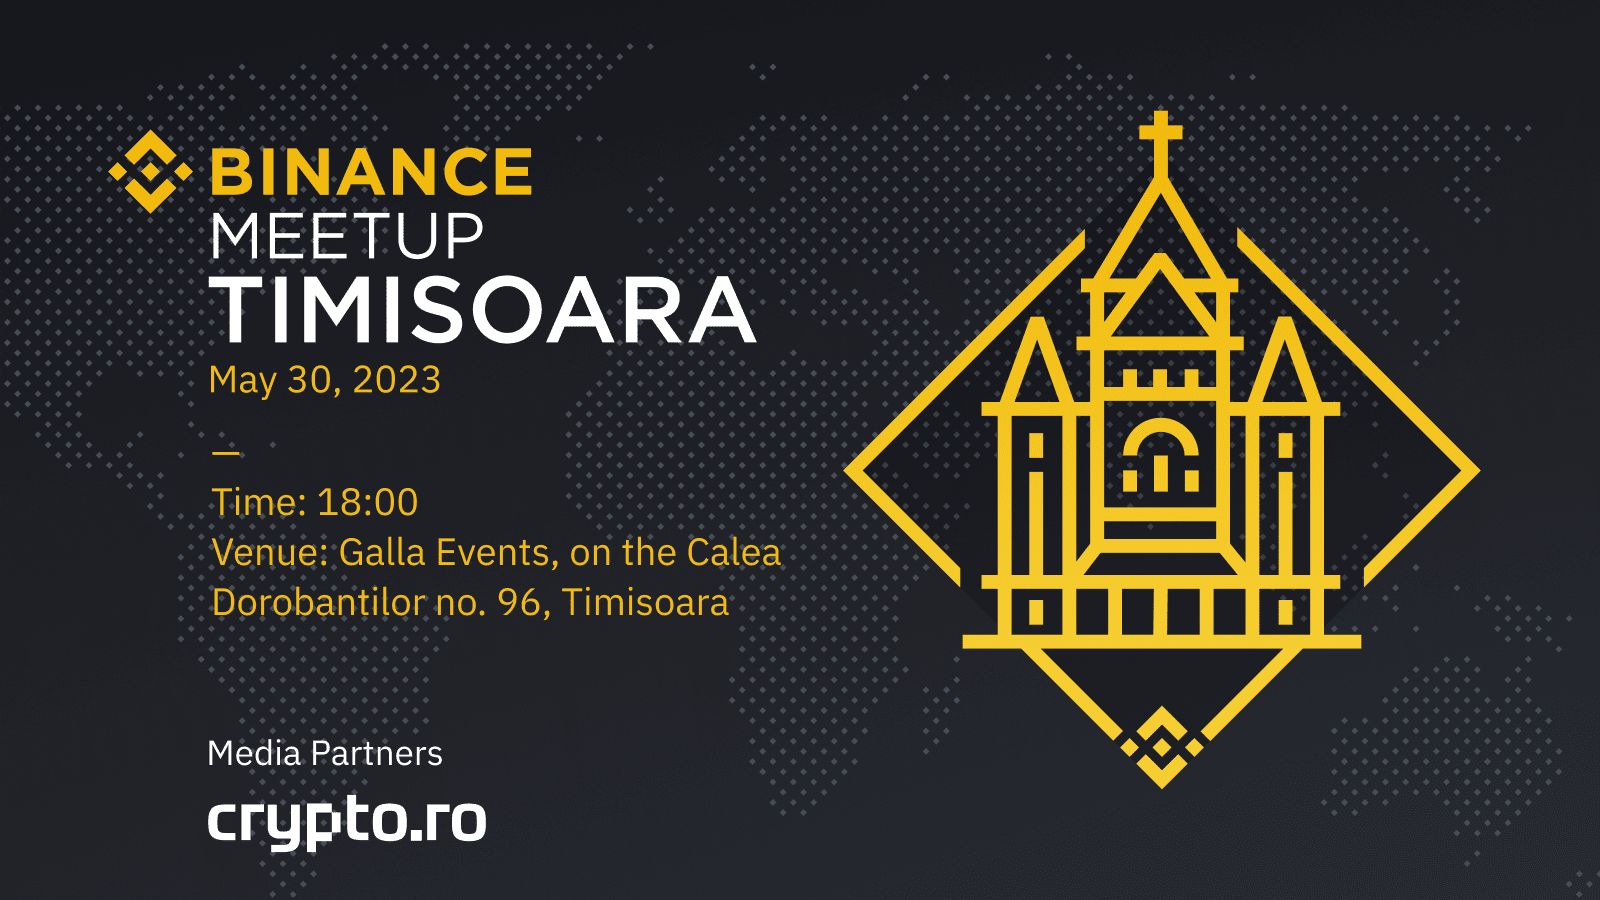 Crypto.ro och Binance presenterar den 3:e Binance Meetup i Rumänien, Happening i Timisoara